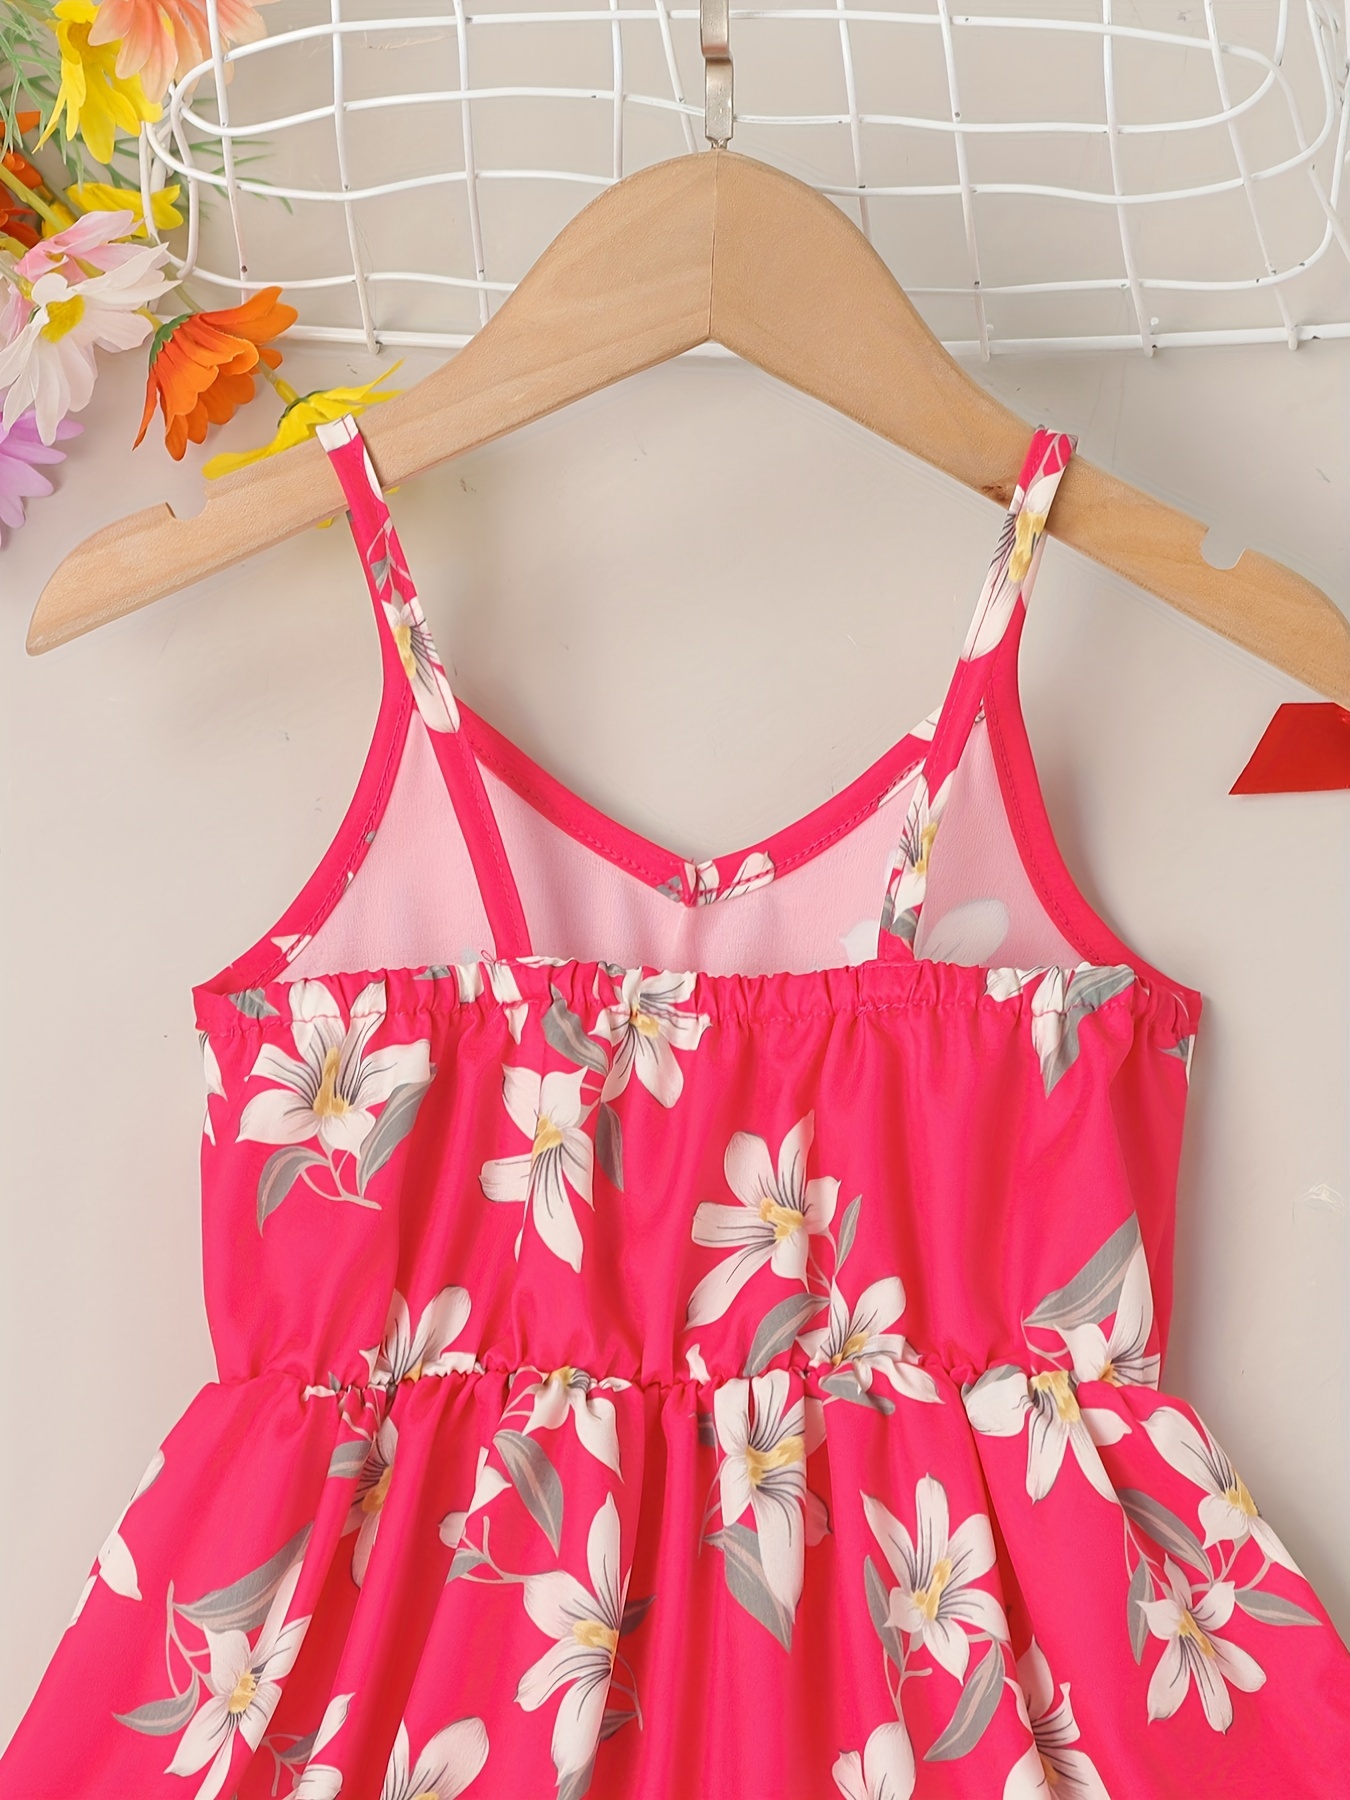 little girls cute sundress floral pattern party beach dress v neck elastic waist camisole dress for summer details 33